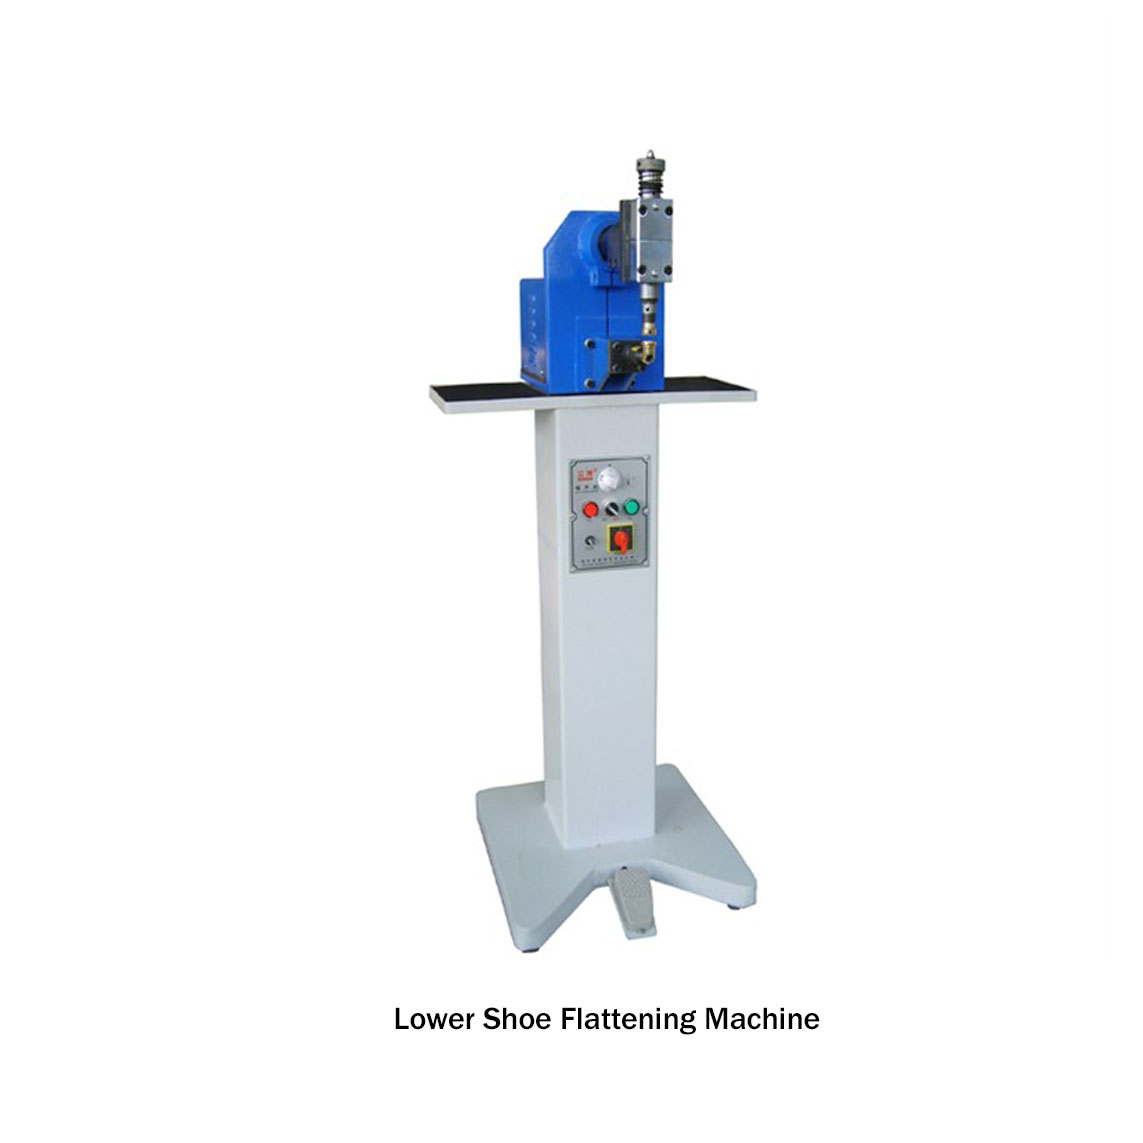 Lower Shoe Flattening Machine